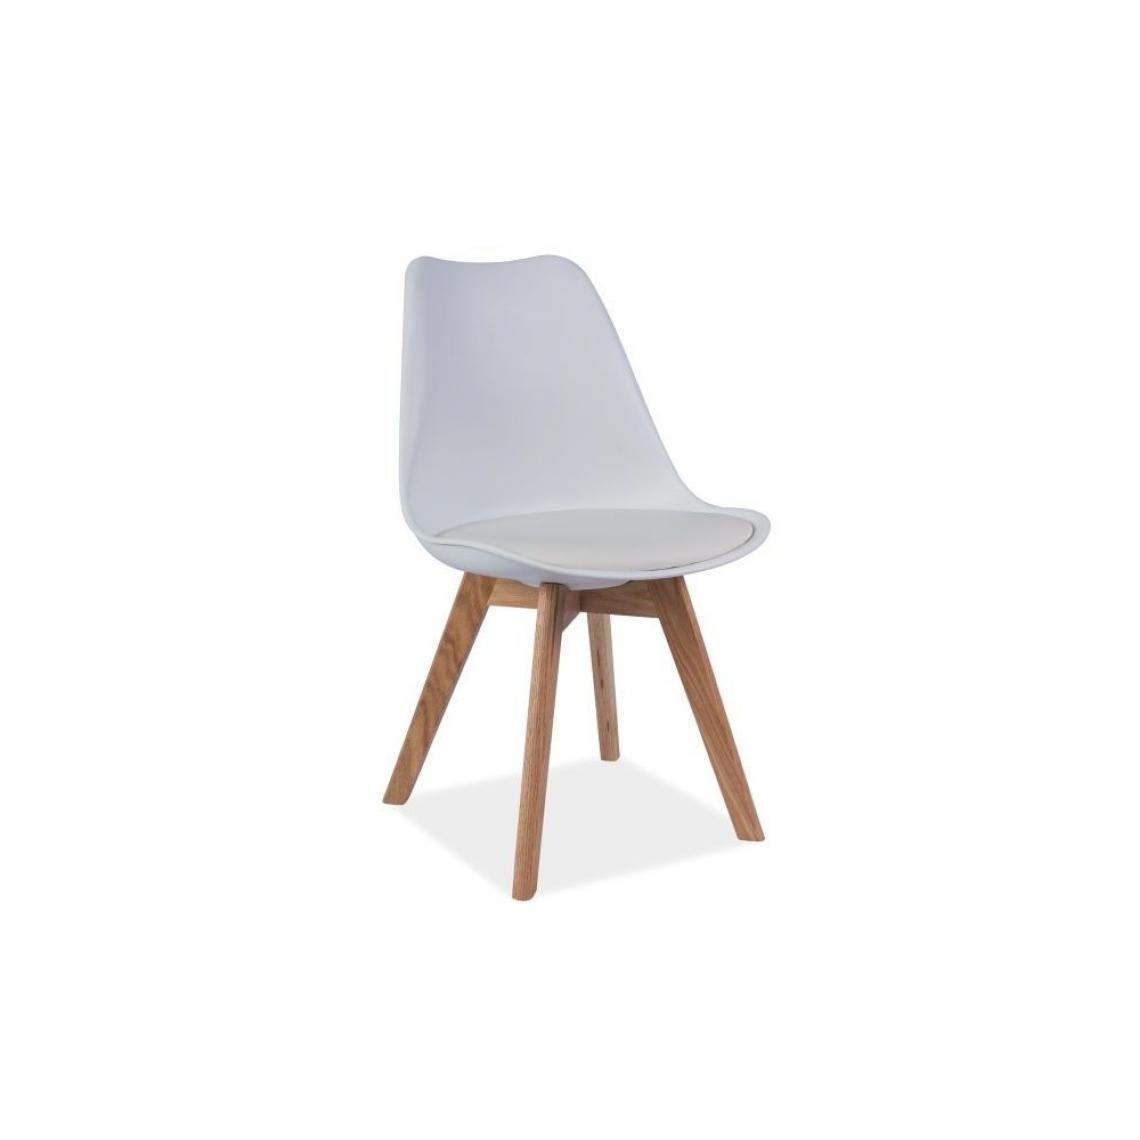 Ac-Deco - Chaise - Kris - 49 x 41 x 83 cm - Cadre en bois couleur chêne - Blanc - Chaises